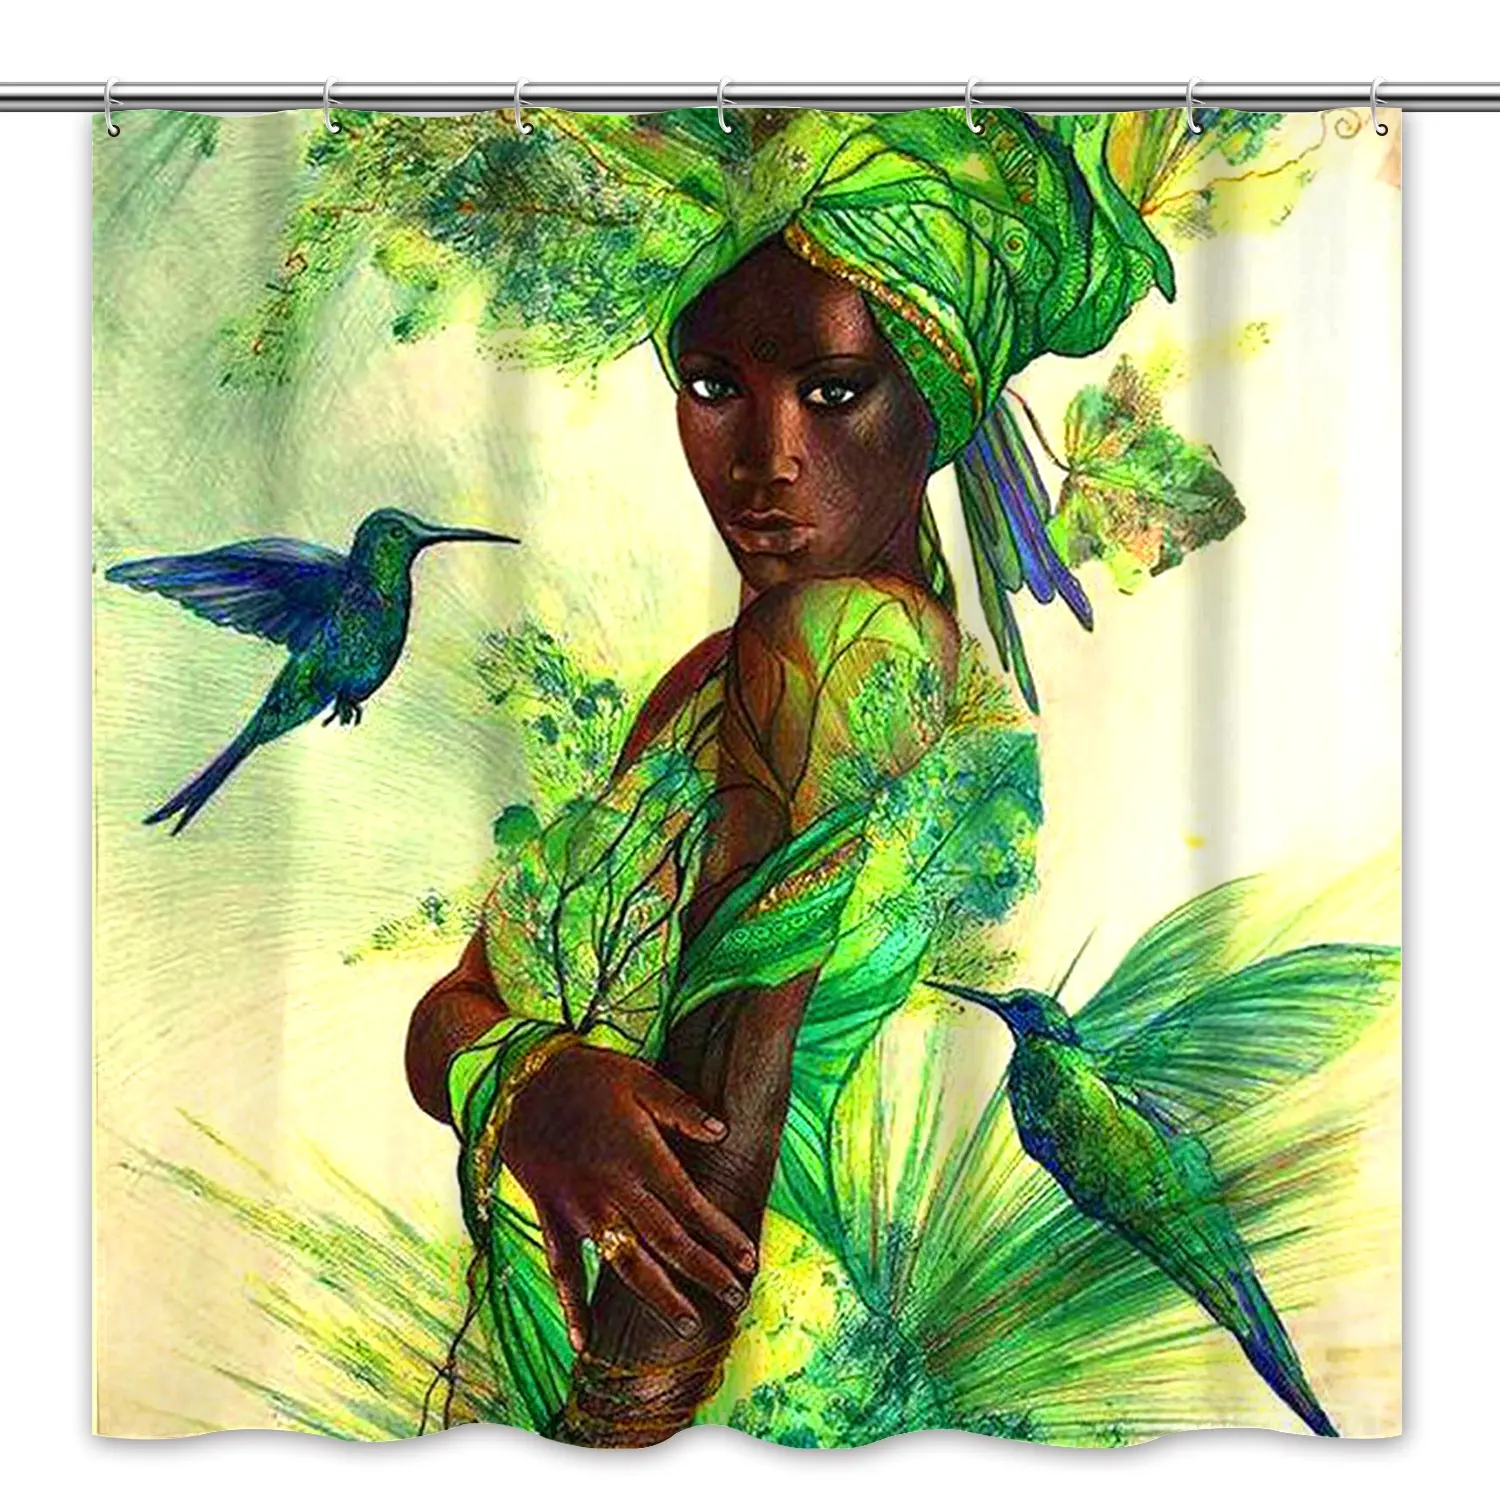 ブラックガールマジック防水アフリカ黒人女性女の子デジタルポリエステルアフロガールシャワーカーテンバスルームカーテン